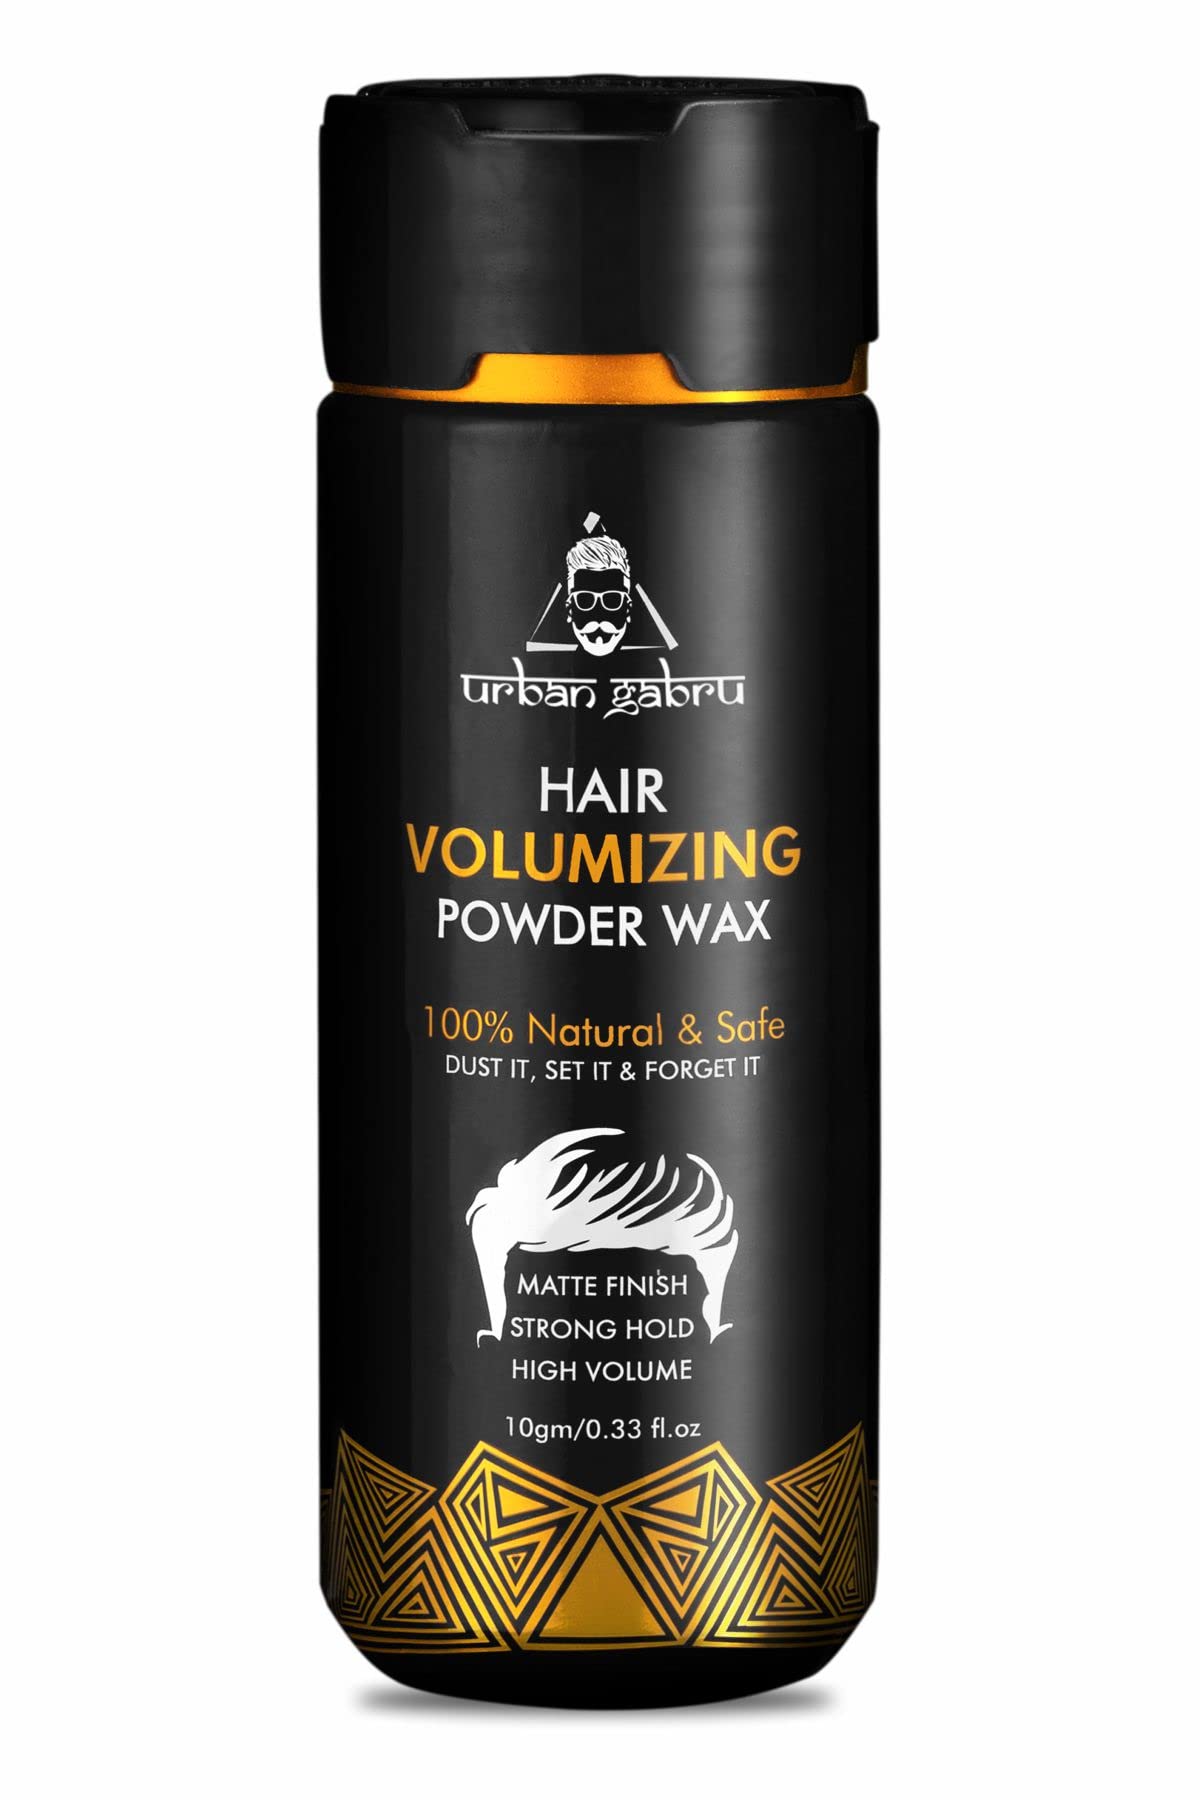 Urbangabru Hair Powder Styling Hair Powder for Men texture powder With  Matte Finish Hair Styling Volumizing